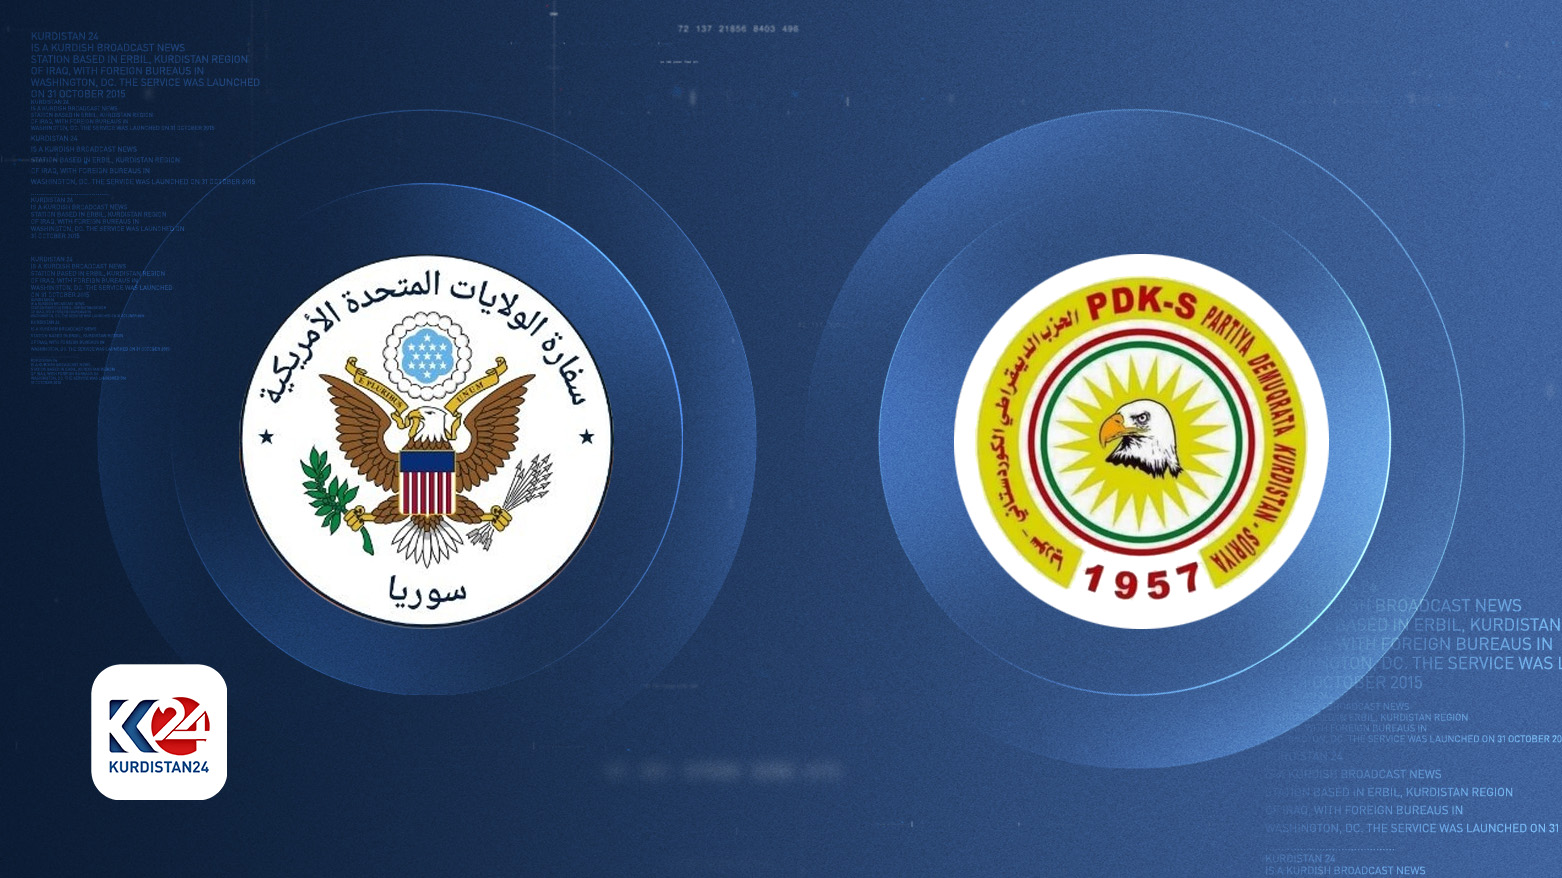 شعار الحزب الديمقراطي الكوردستاني - سوريا والسفارة الأمريكية في سوريا